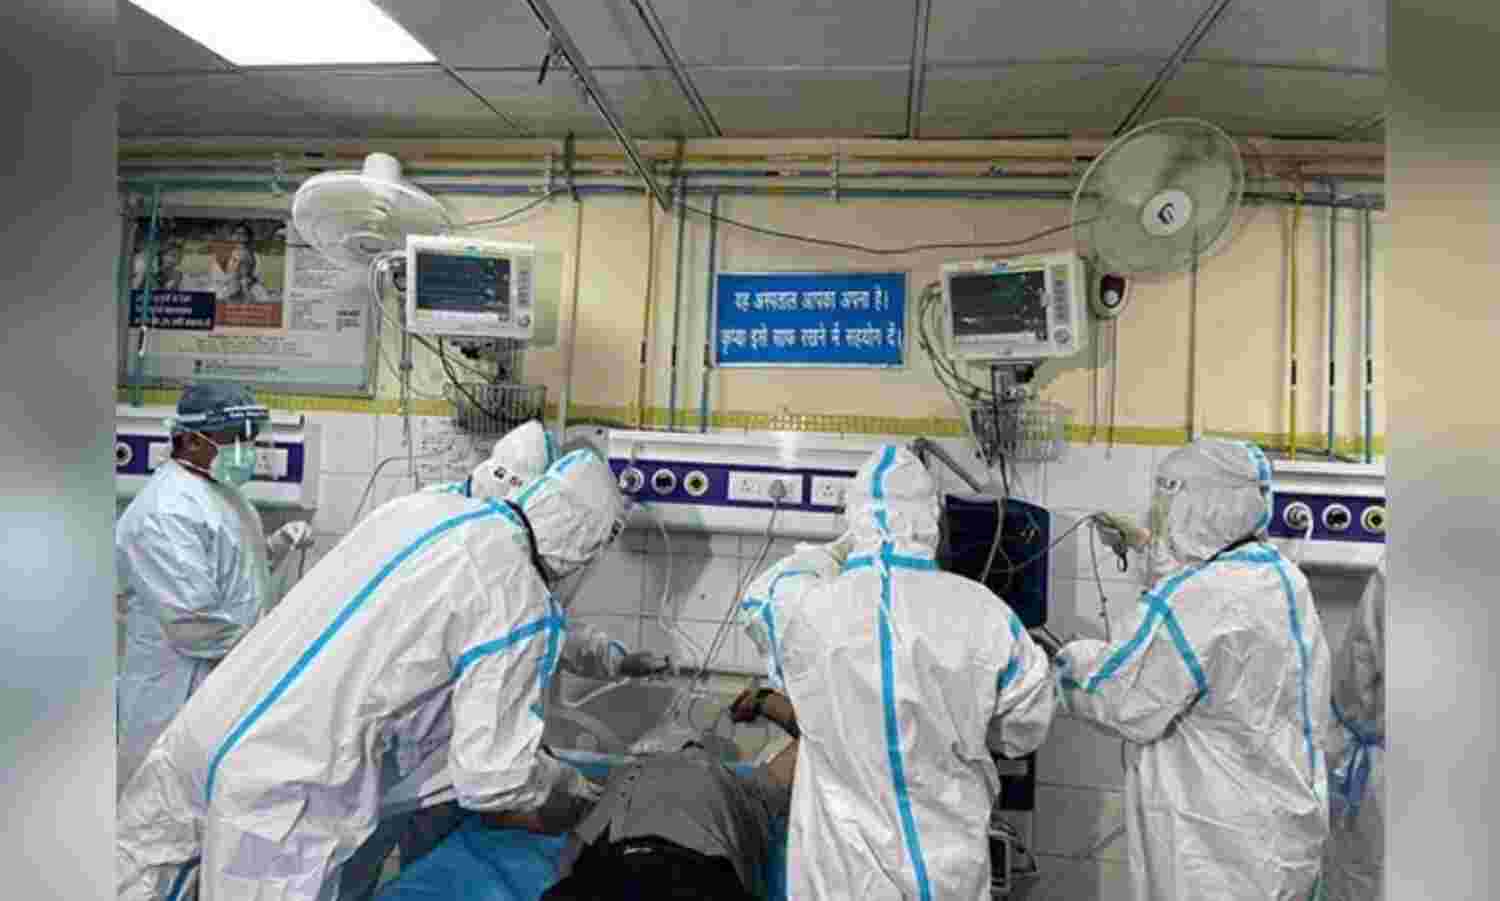 Amid rising Covid cases, Delhi govt hospitals conduct mock drills